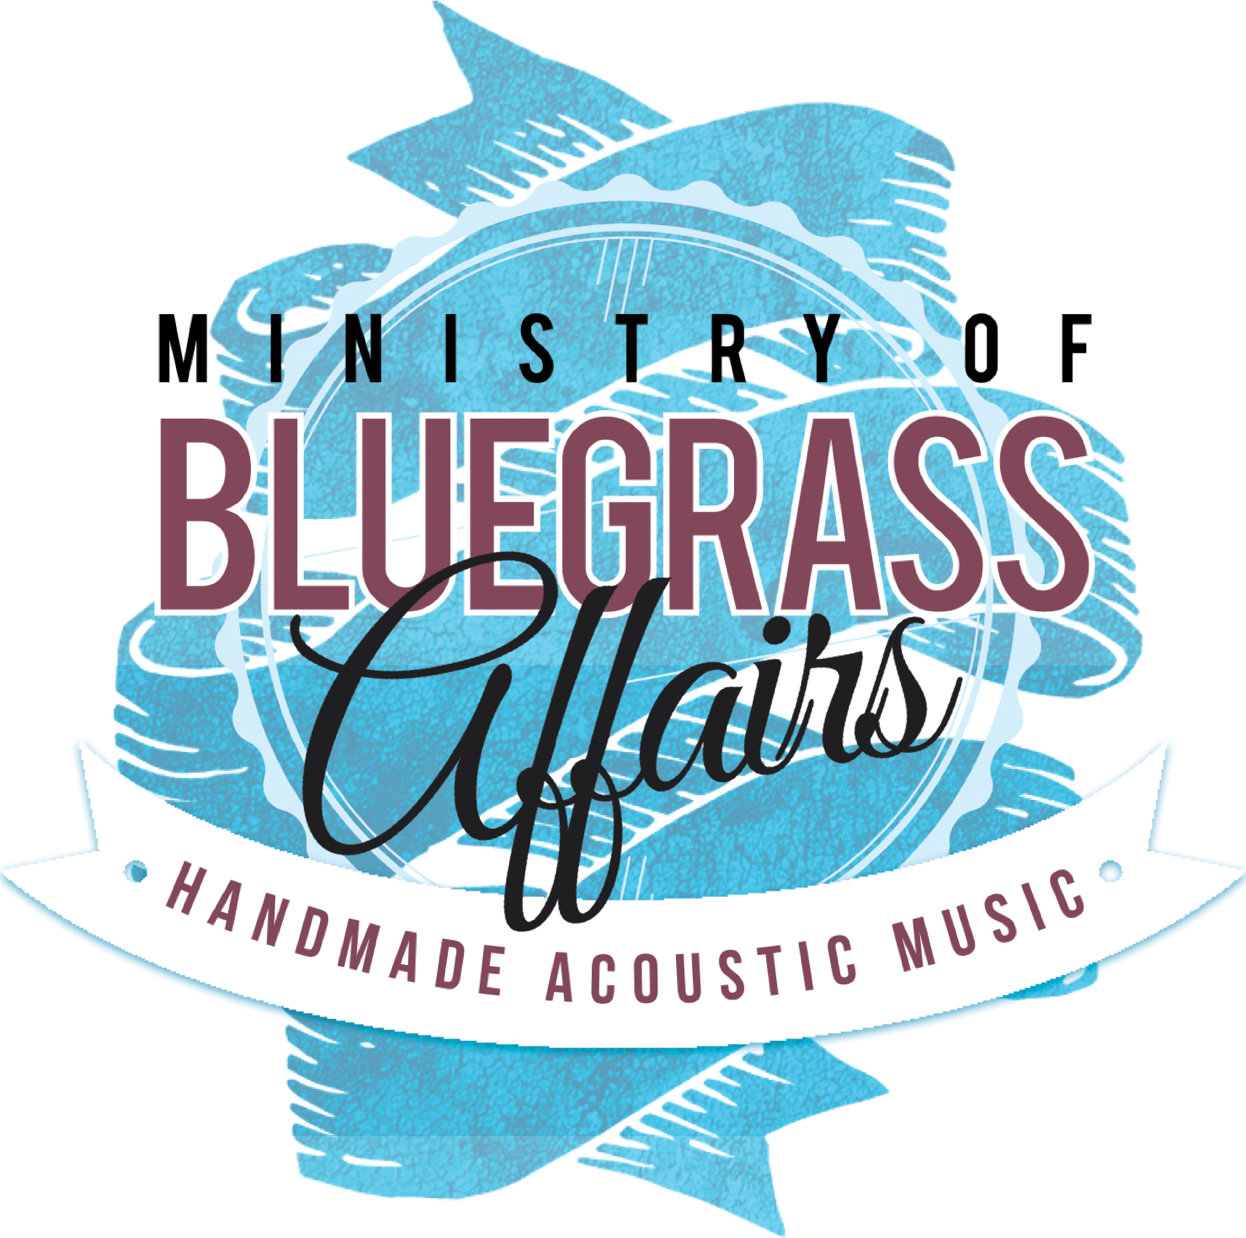 Bluegrass-Affairs Logo: Ministry of Bluegrass Affairs